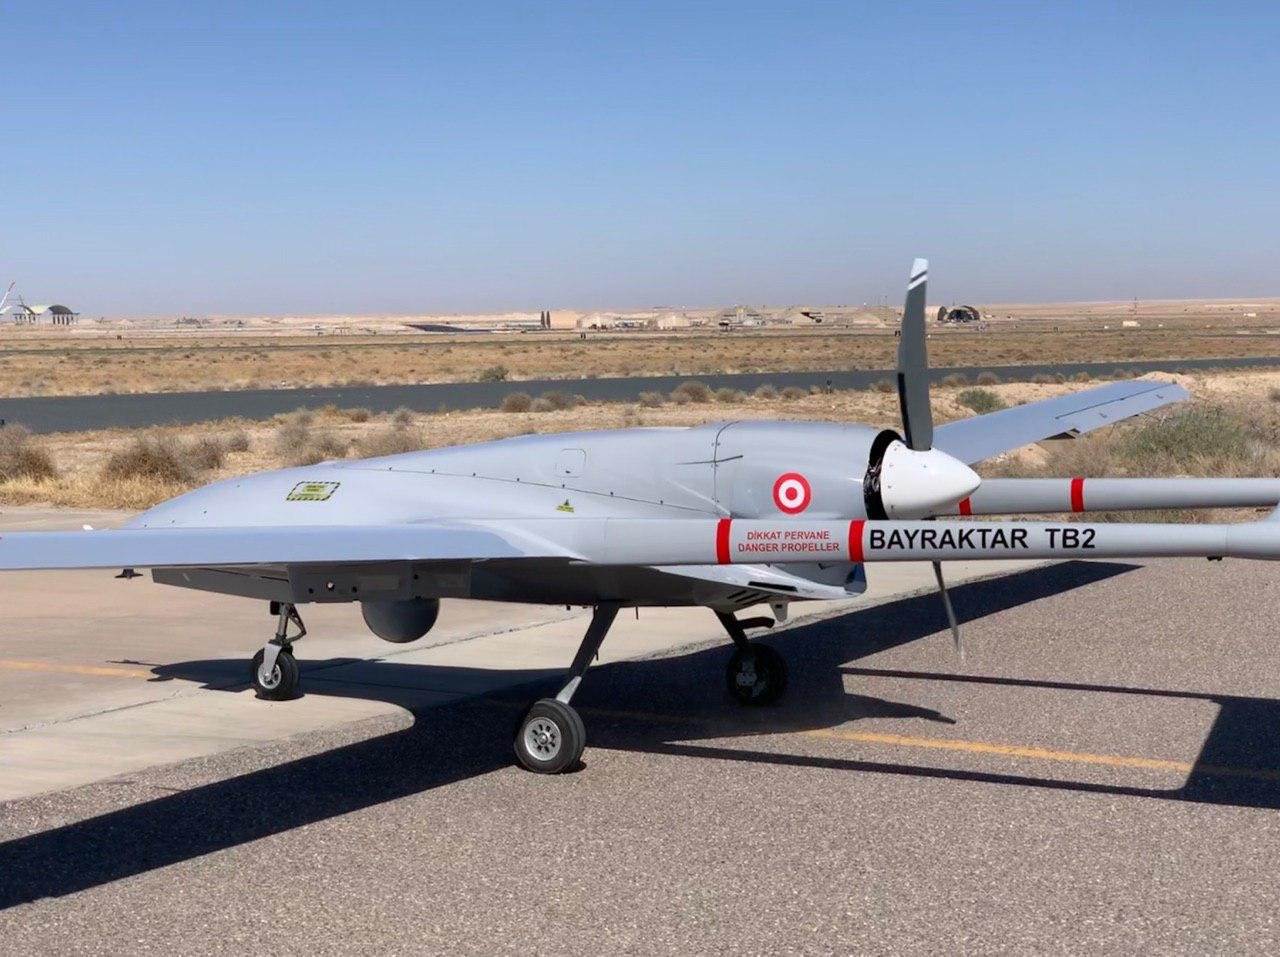 Türkiye's Baykar, Kuwait finalize $367M drone deal